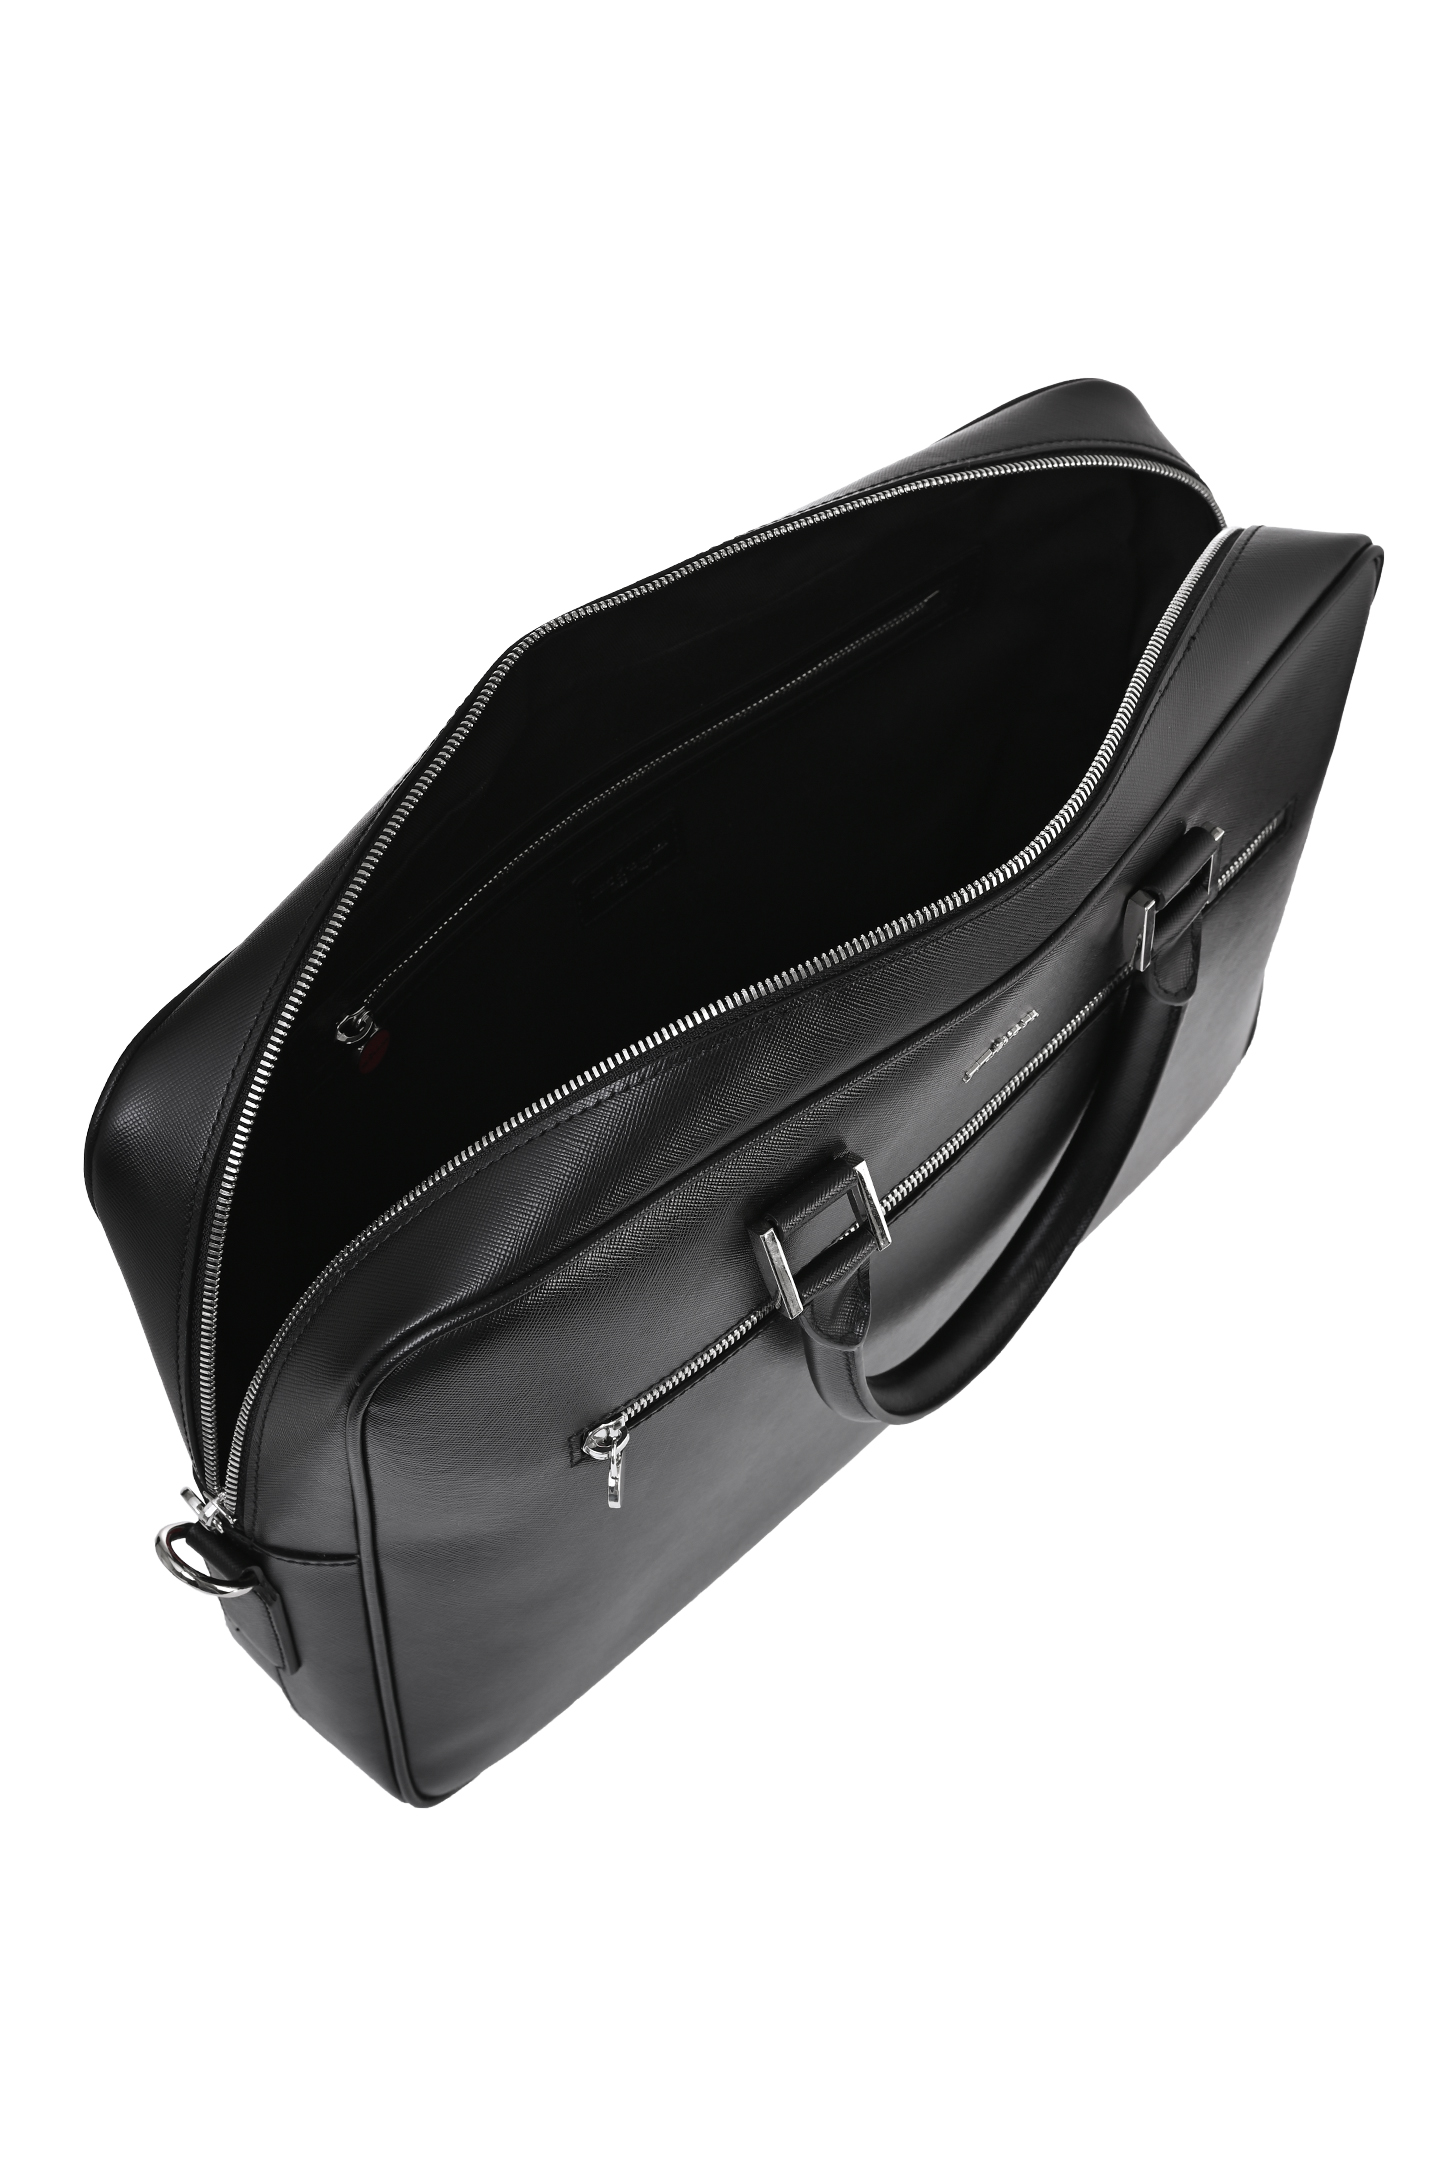 Кожаная сумка для ноутбука KITON UBA0007N01, цвет: Черный, Мужской